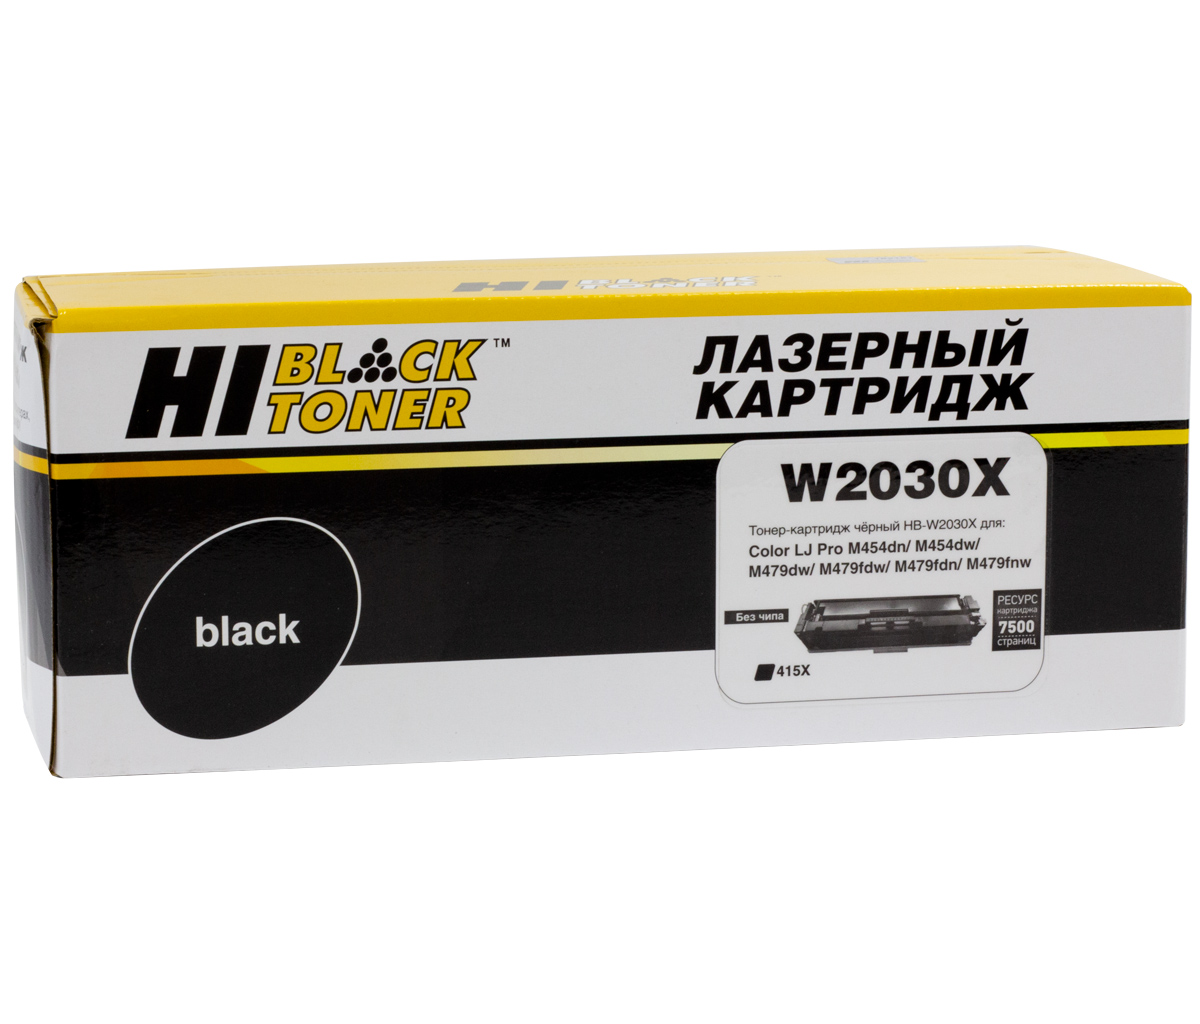 Тонер-картридж Hi-Black (HB-W2030X) для HP Color LaserJetPro M454dn/M479dw, №415X, Bk, 7,5K б/ч